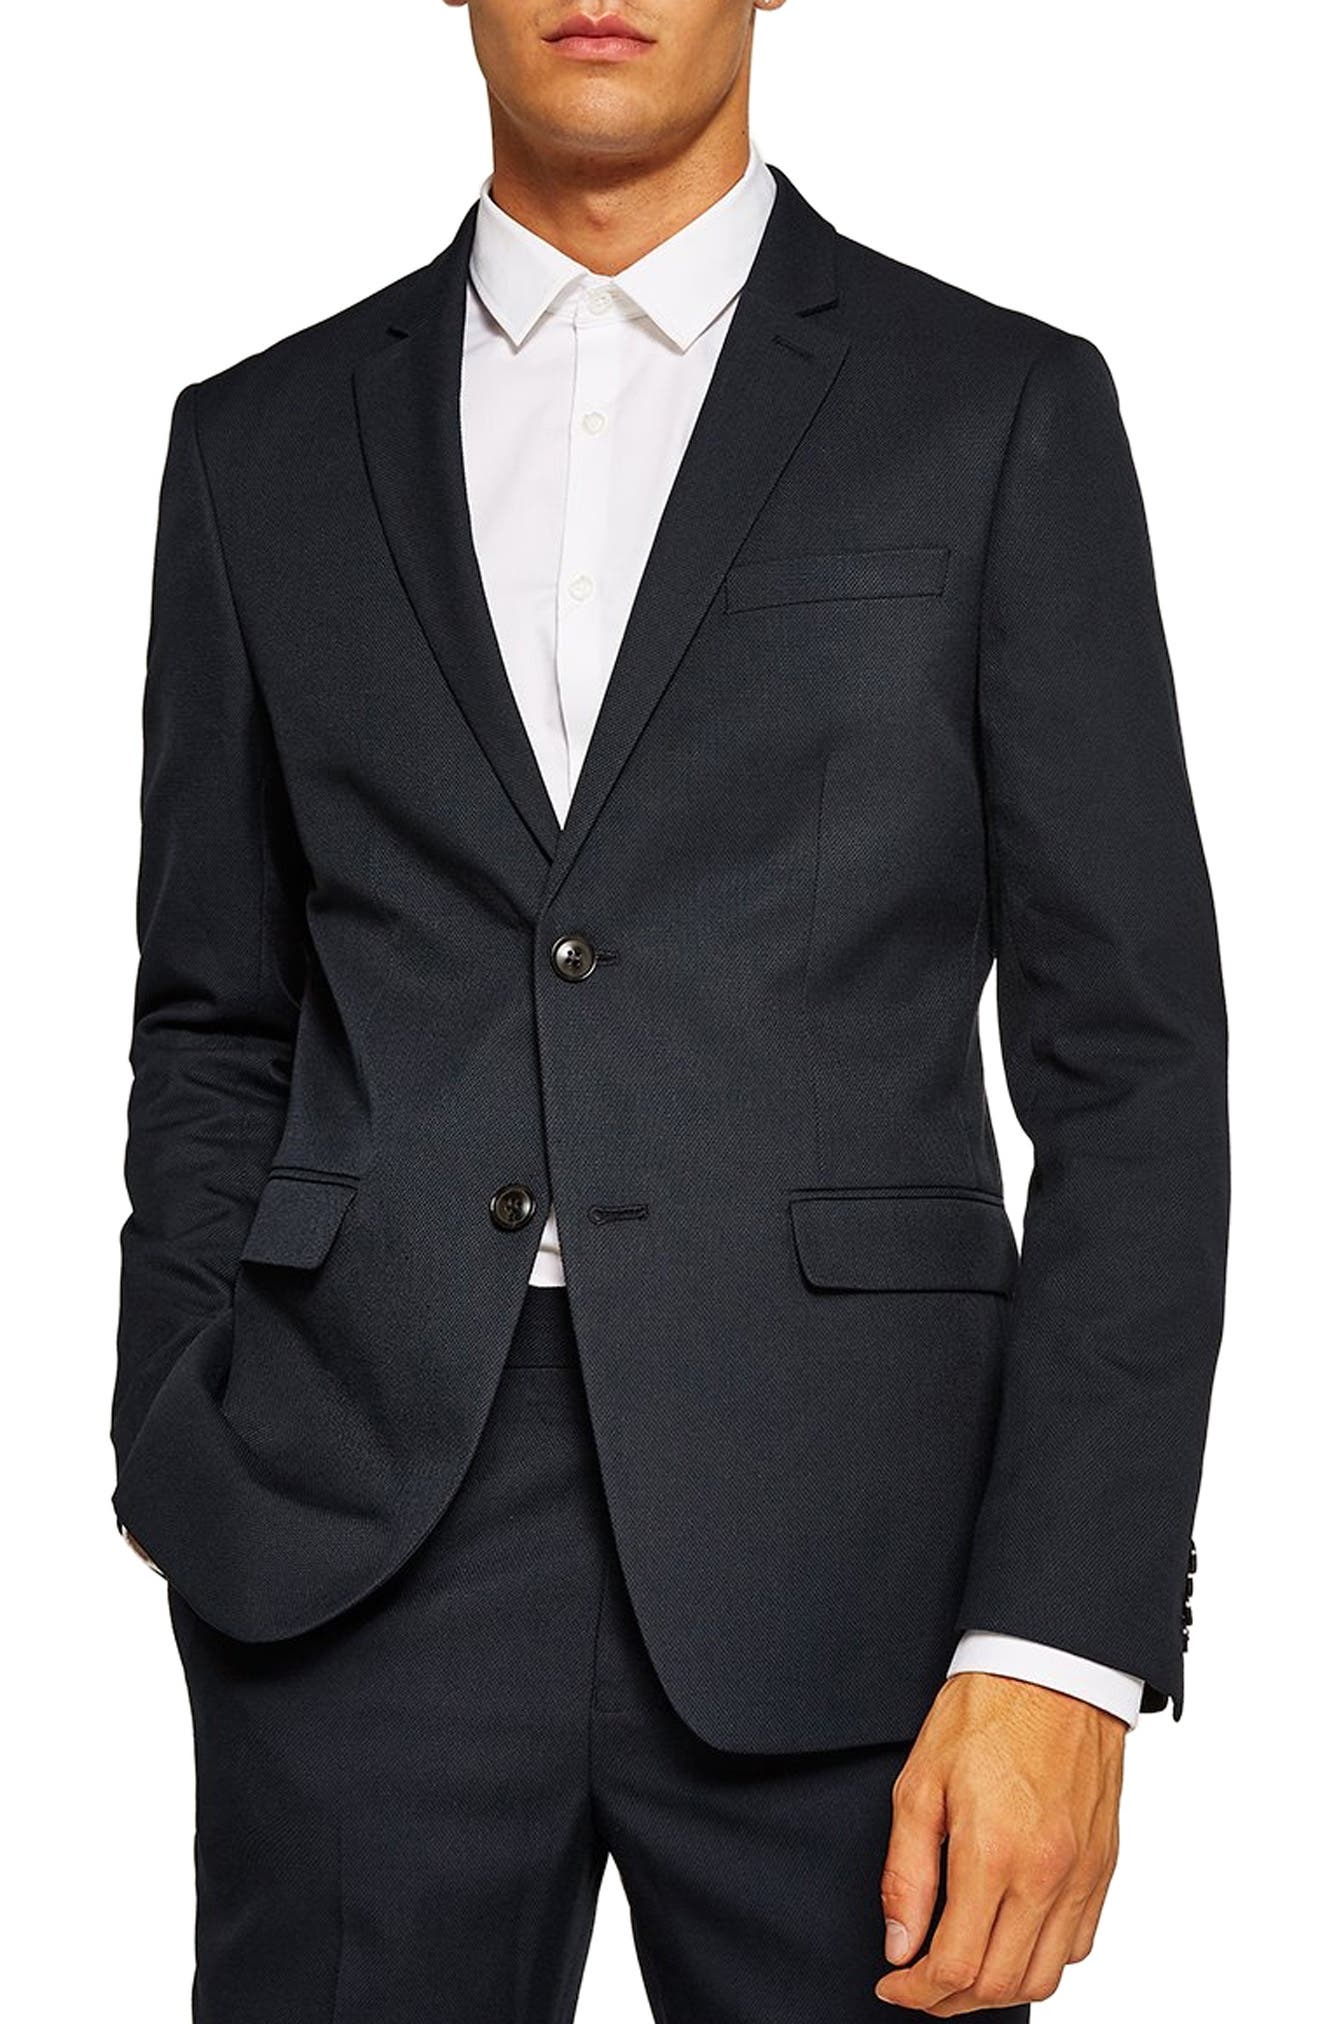 Boys Plaid Suit Blazer Slim Fit Notched Lapel Dress Check Sports Jacket